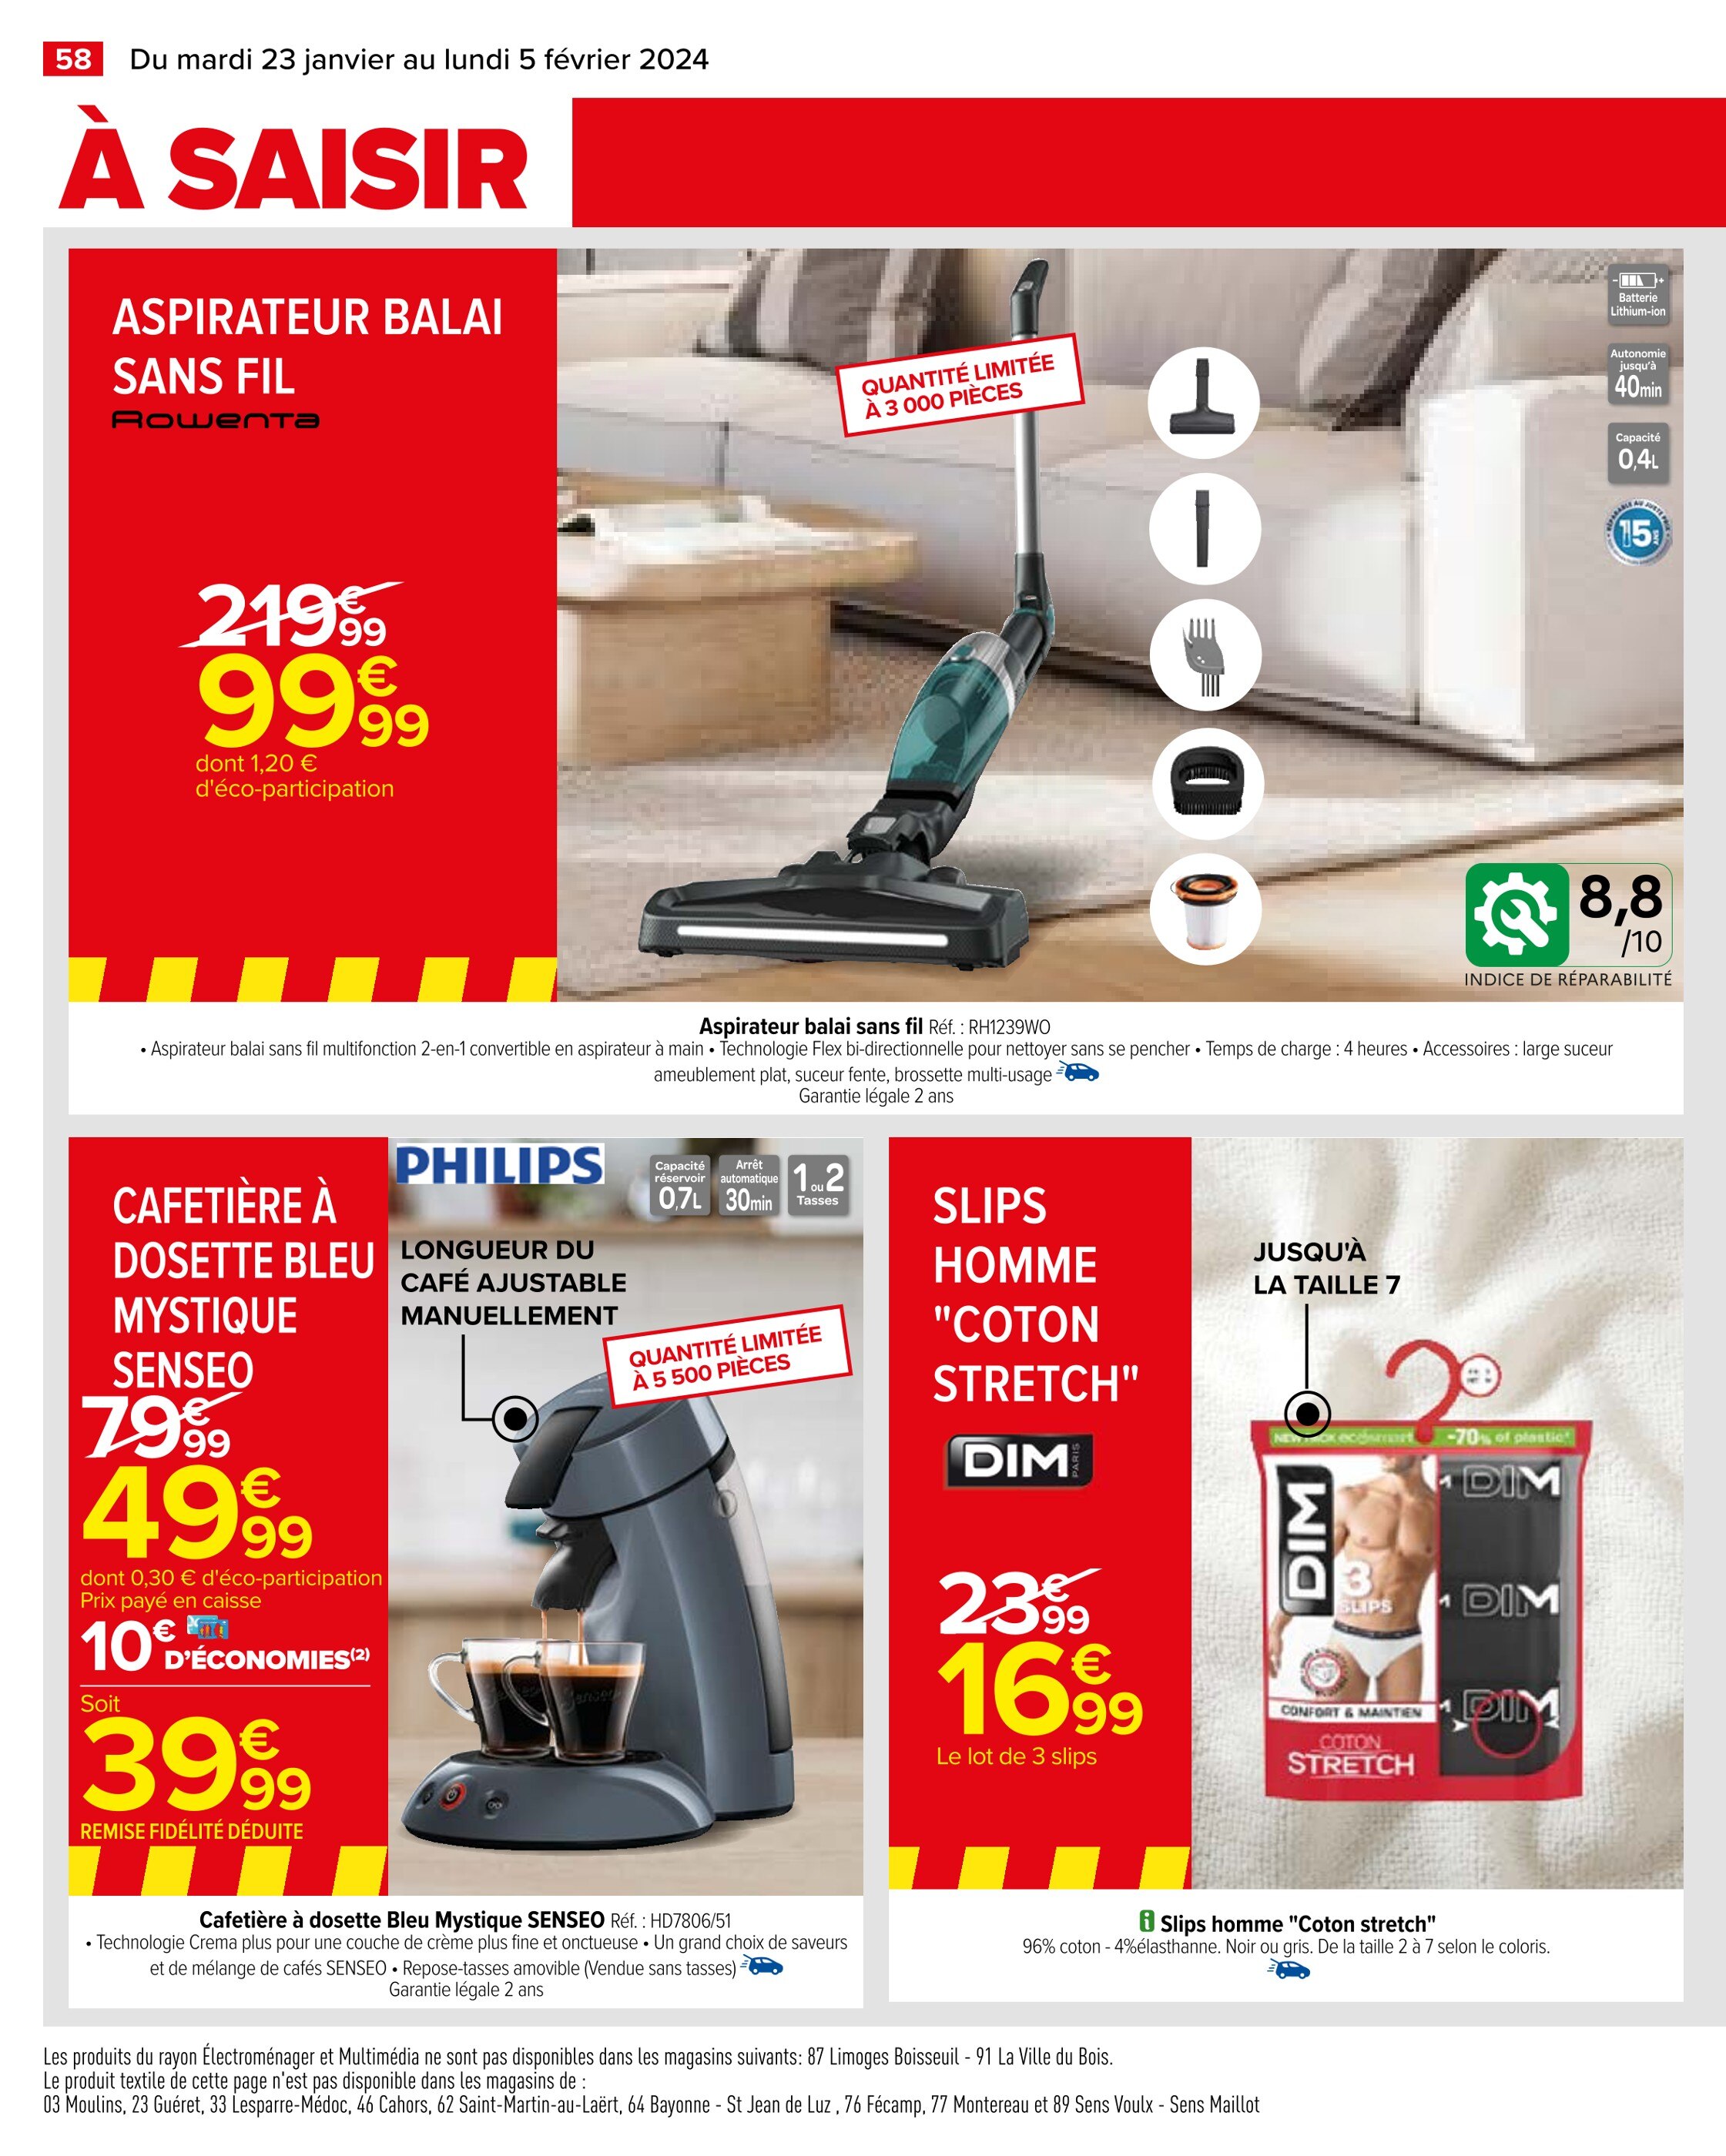 Senseo Auchan ᐅ Promos et prix dans le catalogue de la semaine